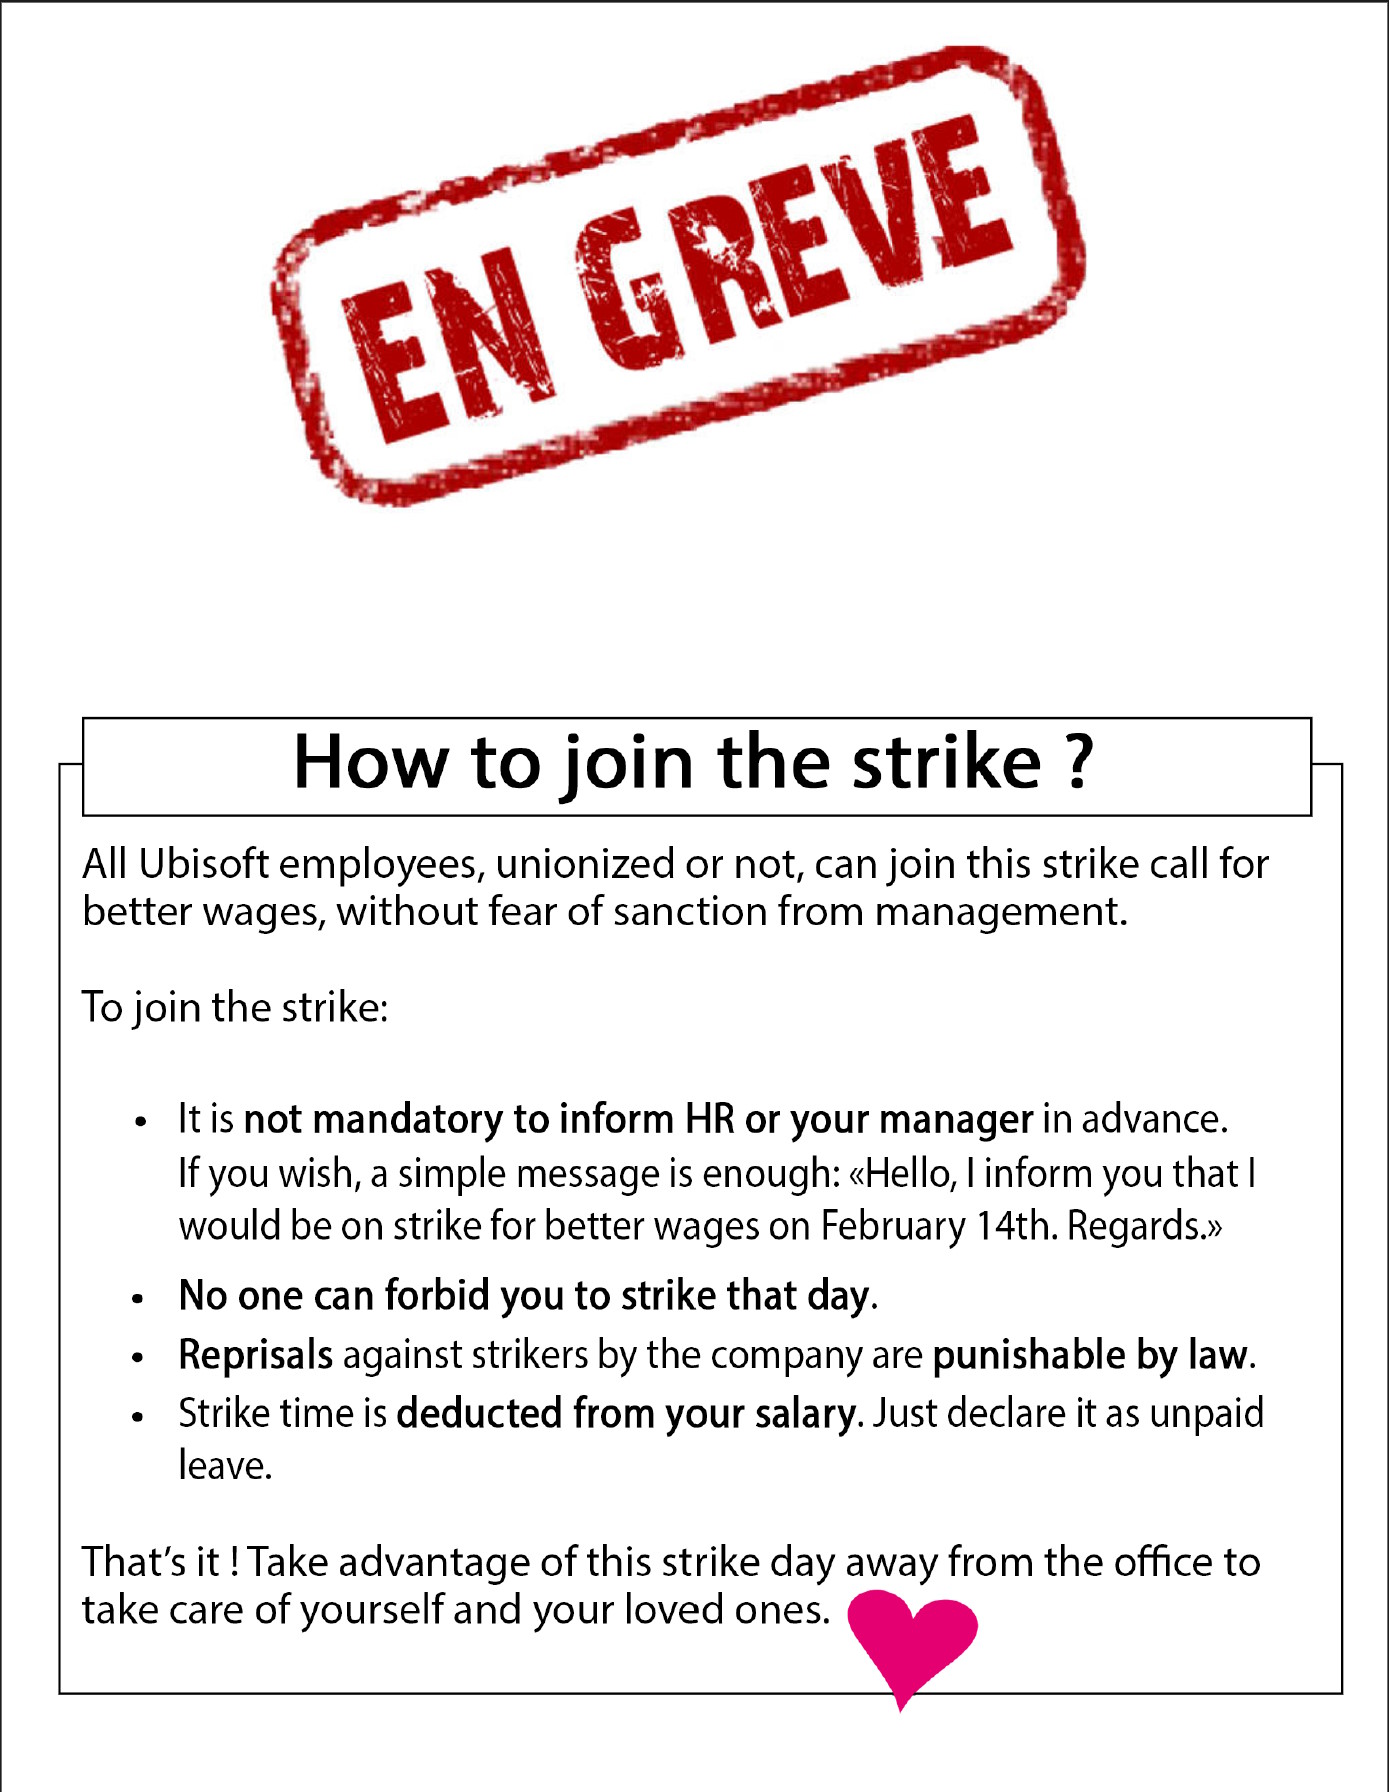 Solidaires Informatique leaflet calling for strikes at Ubisoft studios in France